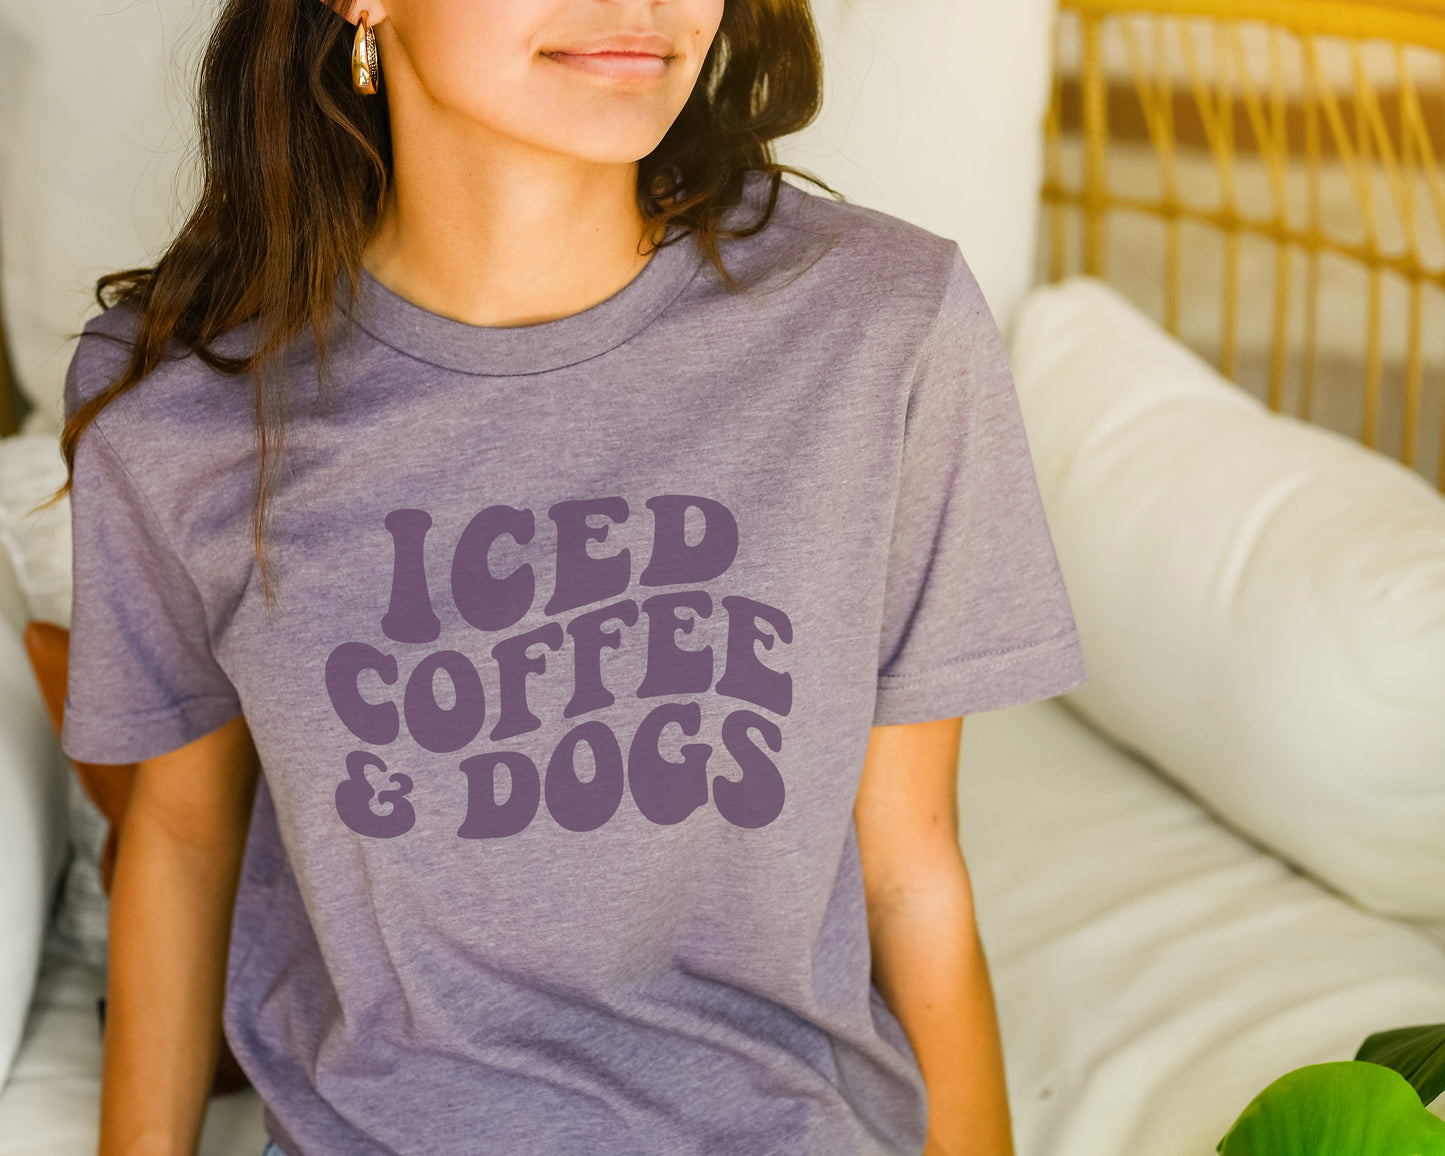 Iced Coffee and Dogs Tee